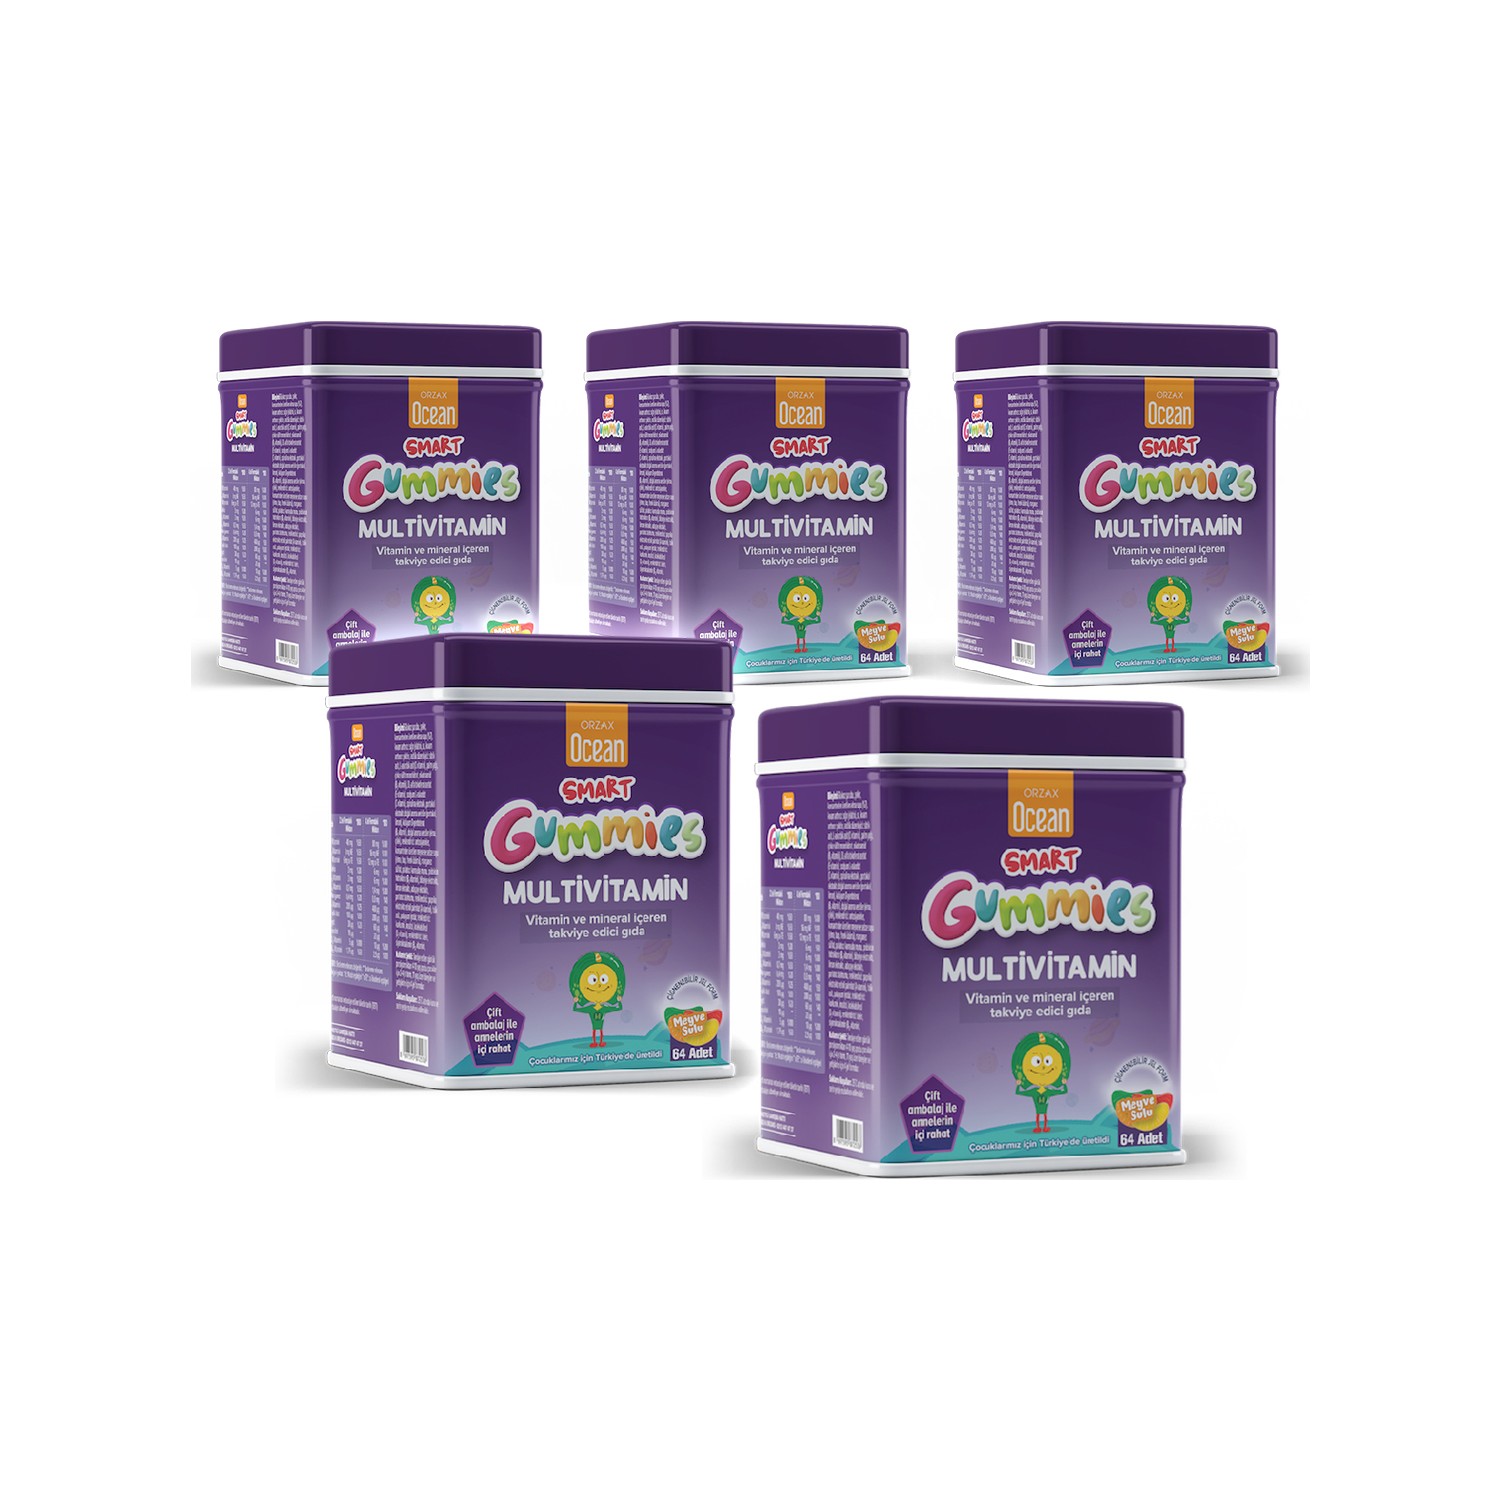 Мультивитаминная добавка Ocean Smart Gummies, 5 упаковок по 64 таблетки пищевая добавка kobayashi multivitamin mineral essential amino acids